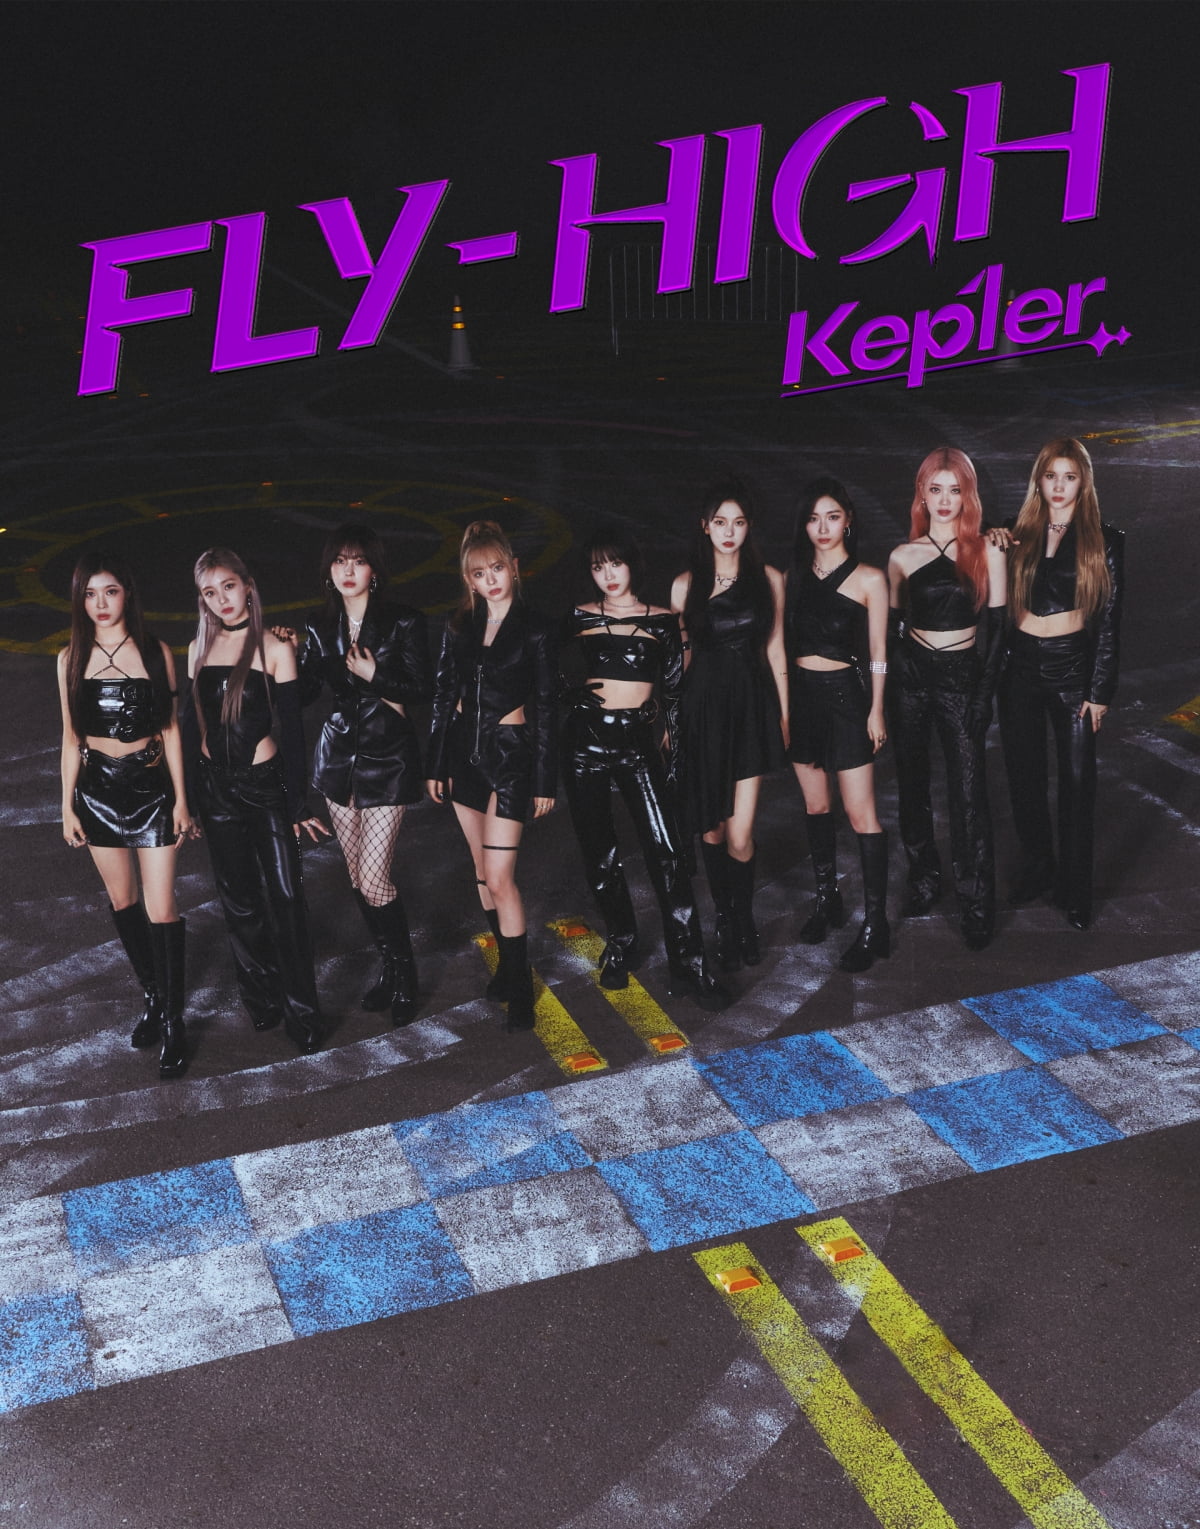 케플러, 일본 세 번째 싱글 'FLY-HIGH'로 일본 레코드협회 '골드' 음반 인증